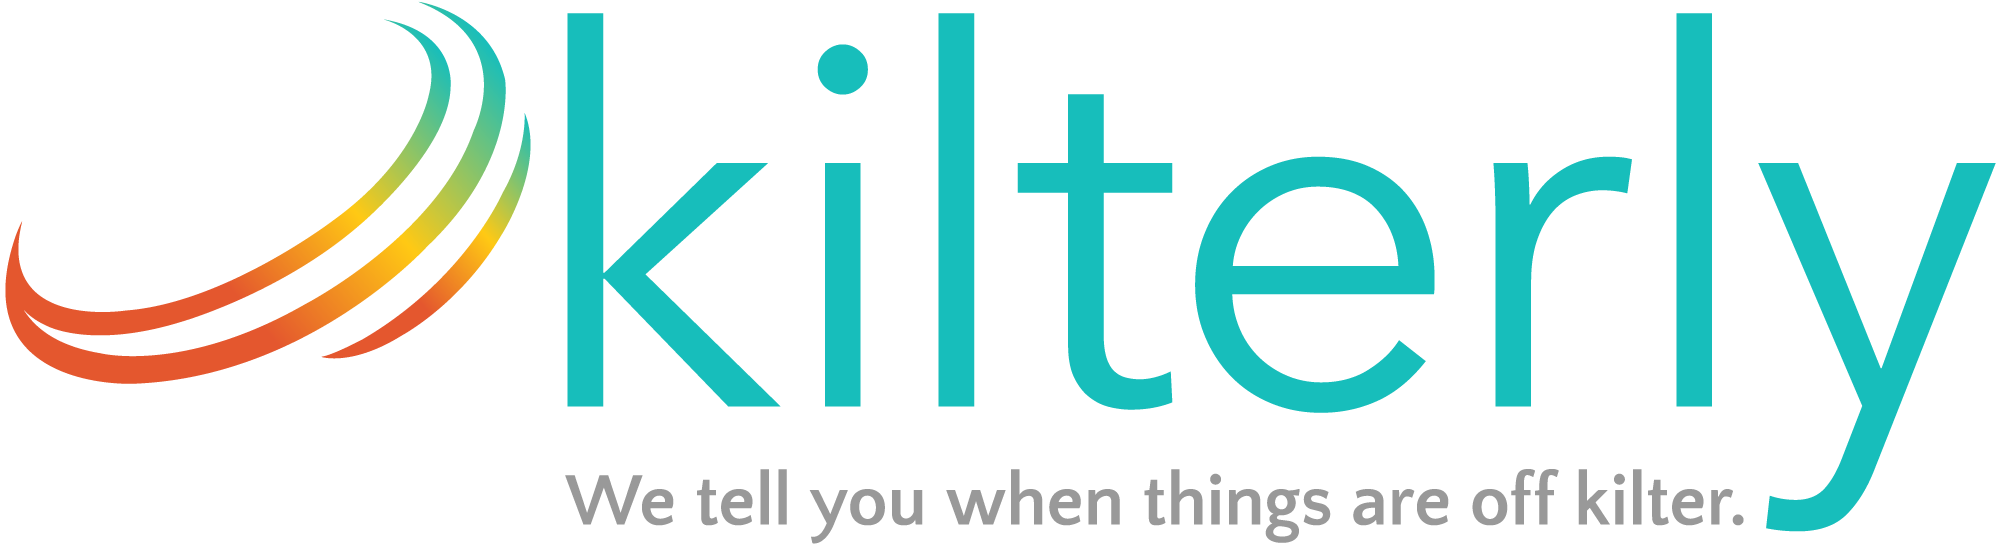 kilterly logo